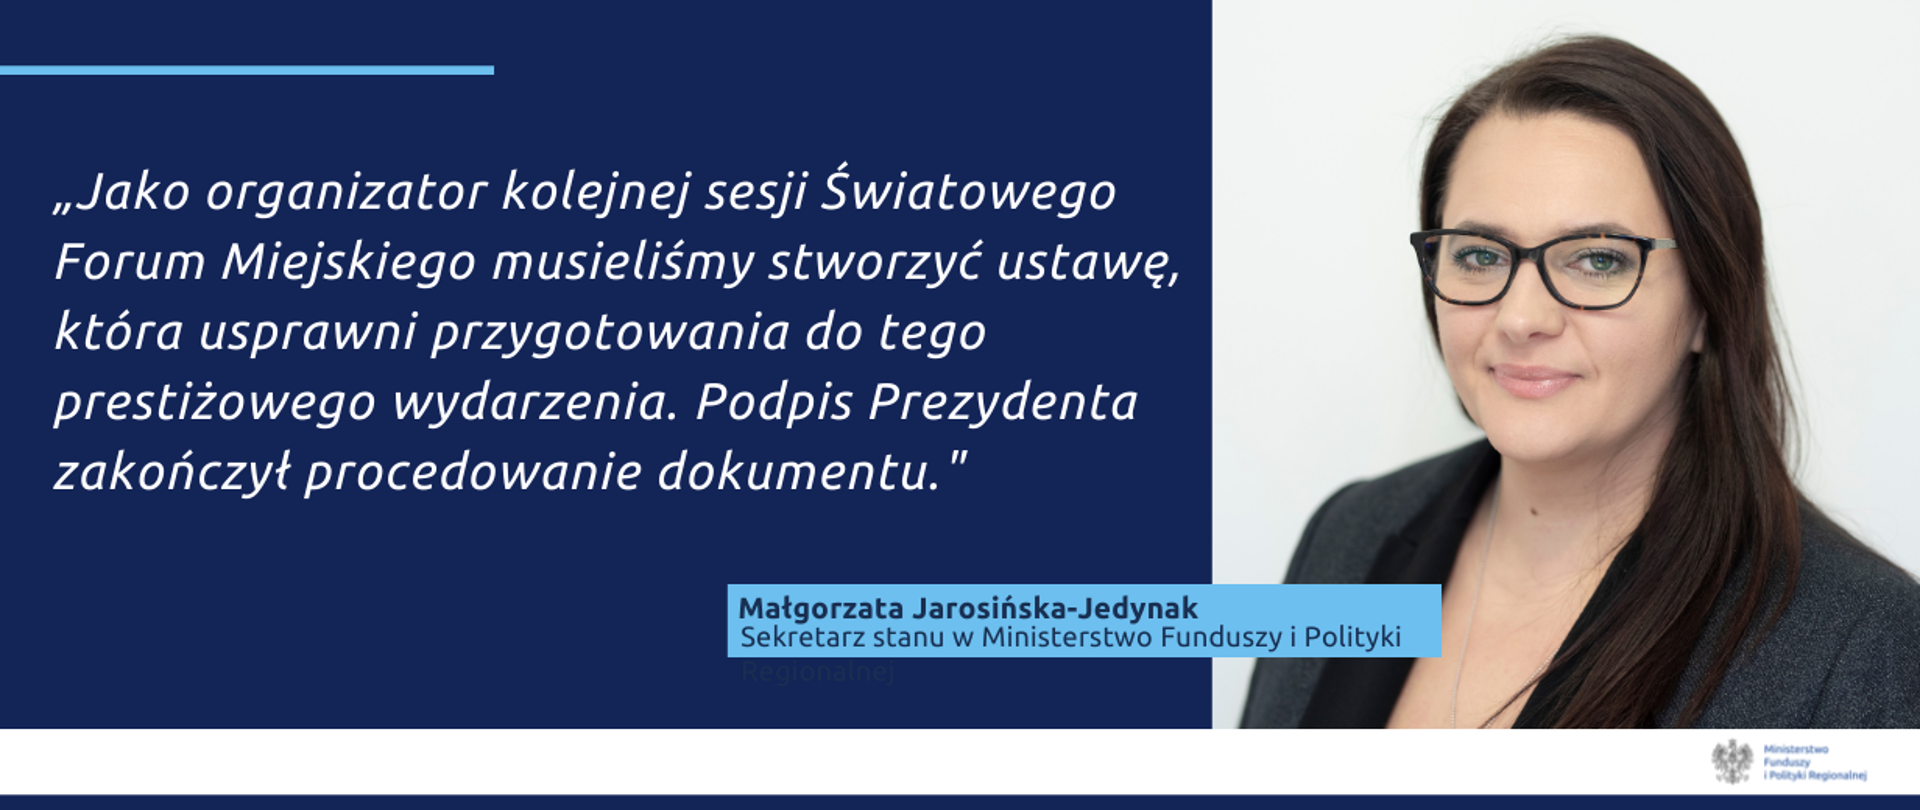 Na grafice zdjęcie wiceminister Małgorzaty Jarosińskiej-Jedynak oraz cytat: "Jako organizator kolejnej sesji Światowego Forum Miejskiego musieliśmy stworzyć ustawę, która usprawni przygotowania do tego prestiżowego wydarzenia. Podpis Prezydenta zakończył procedowanie dokumentu."